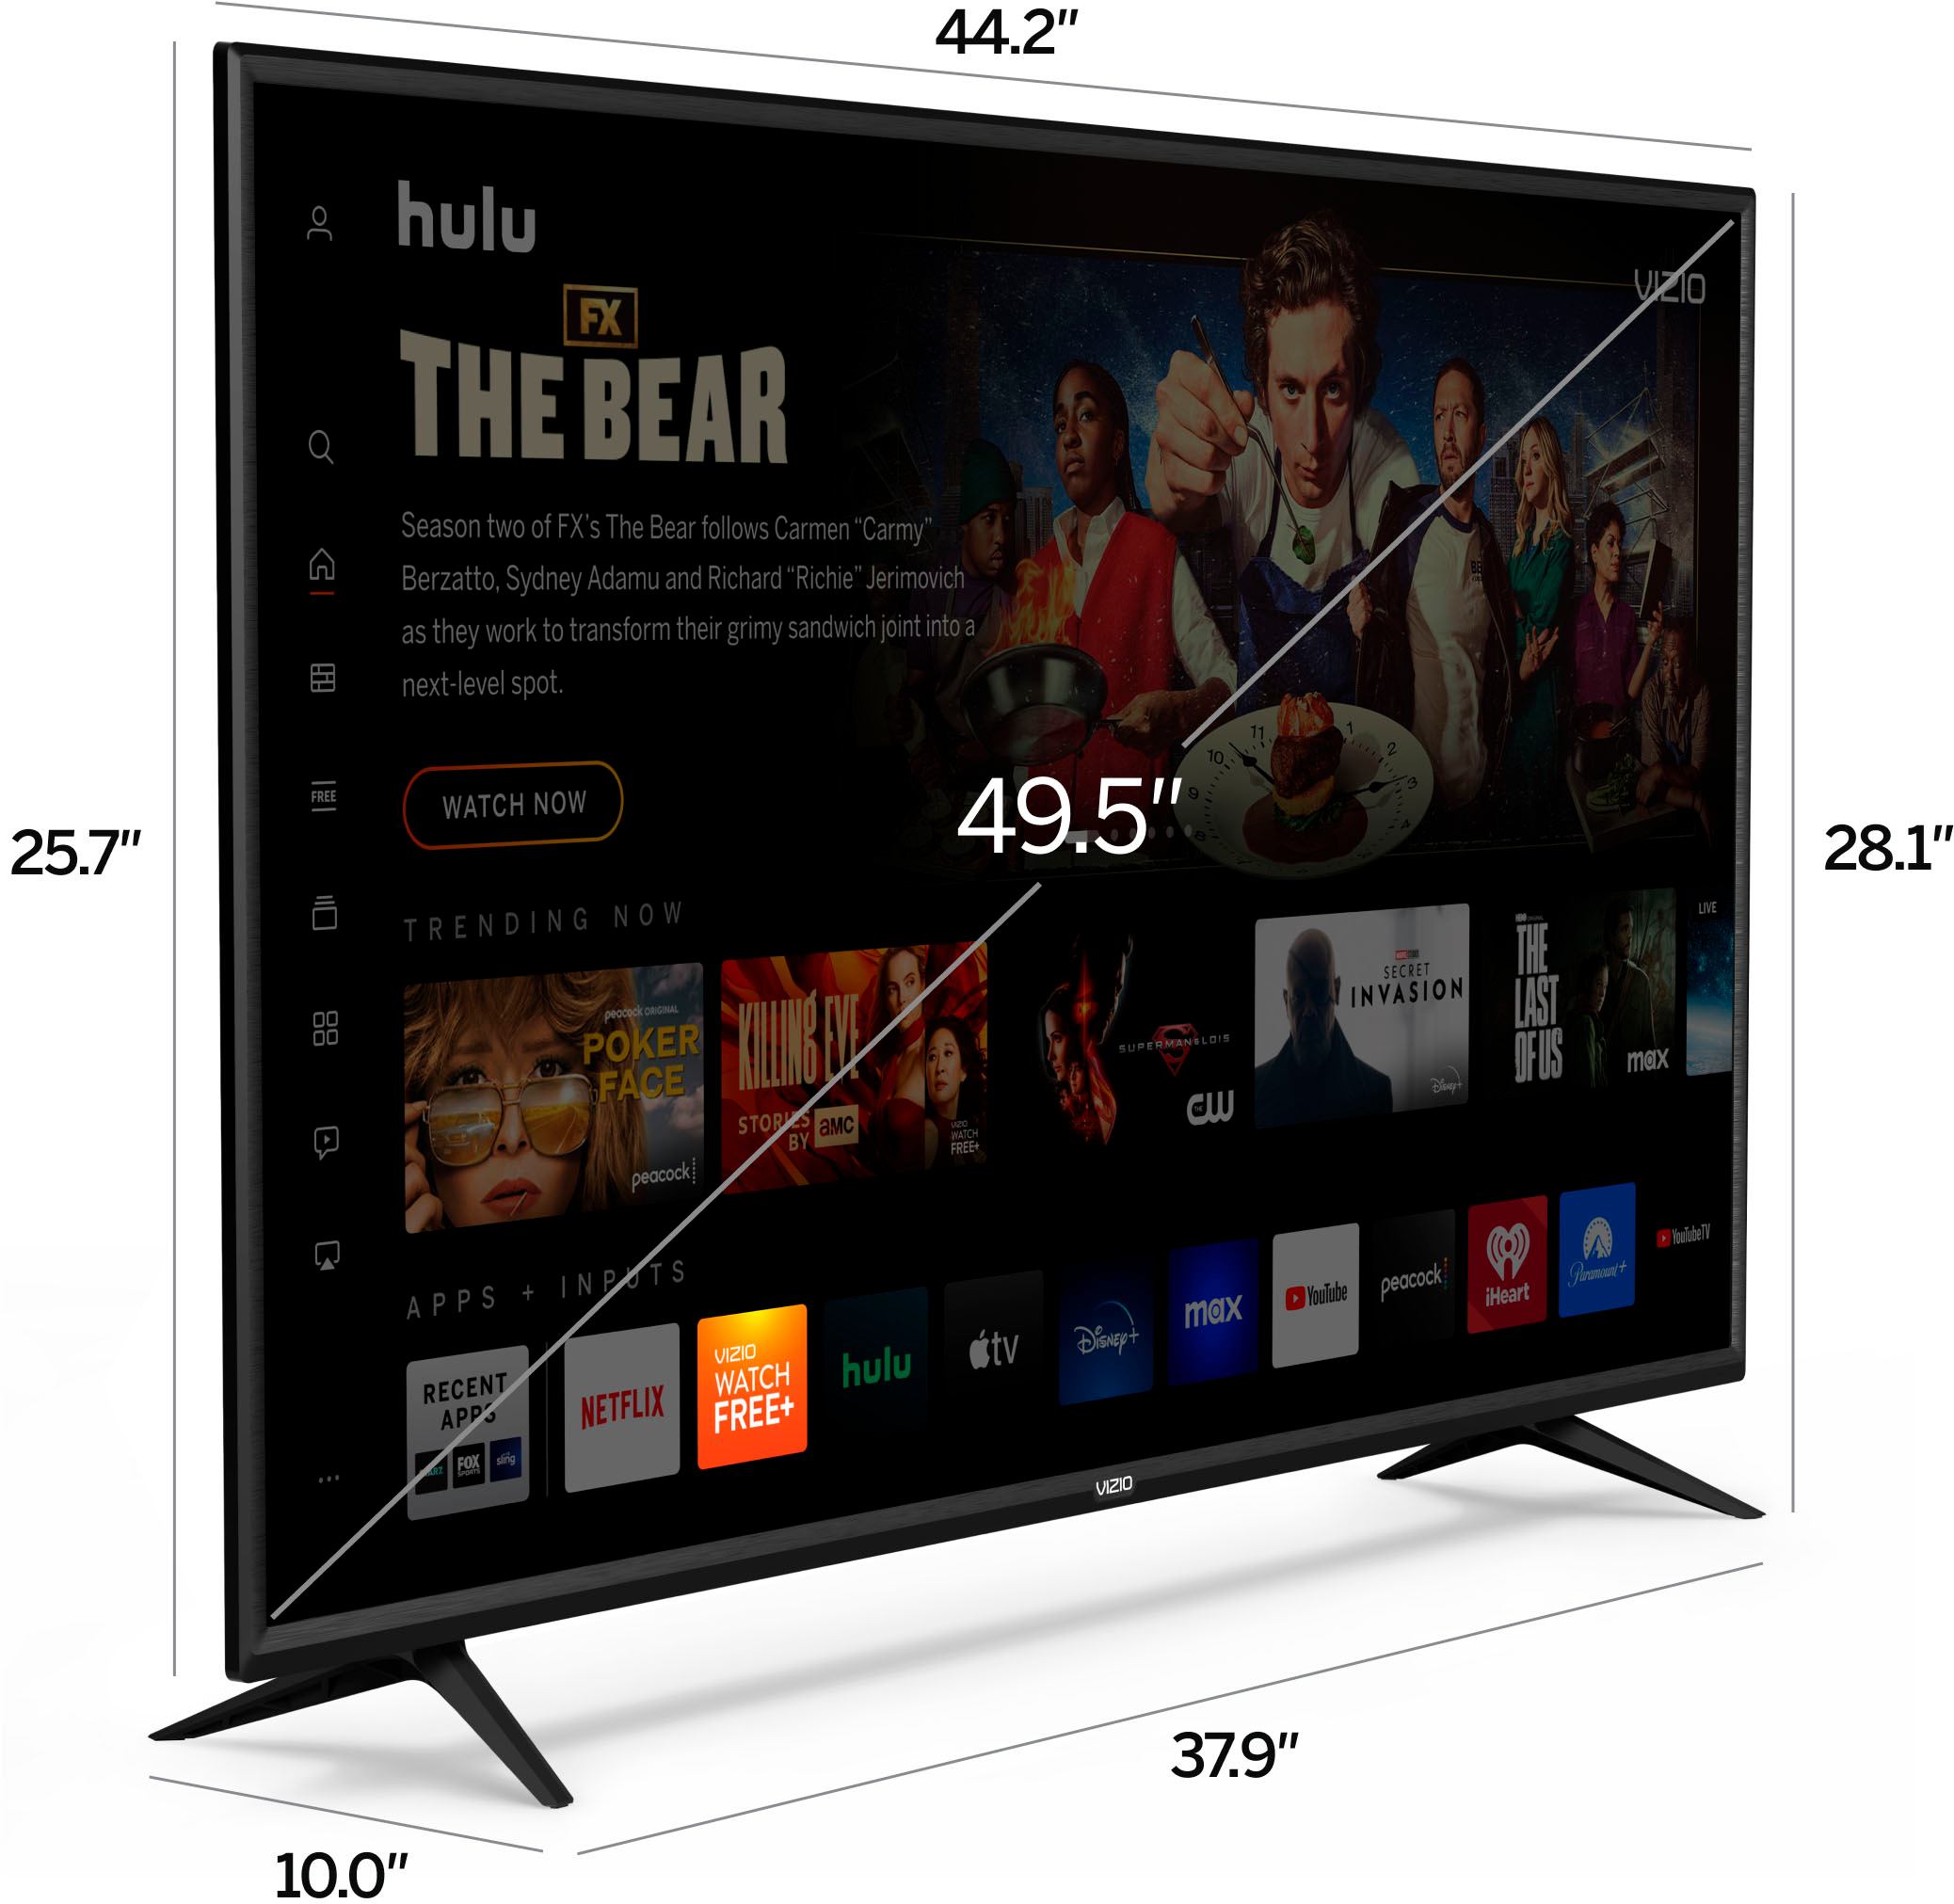 VIZIO Smart LED TV Class V-Series 4K Ultra HD (2160p) de 50 pulgadas  (V505-G9) (renovado)